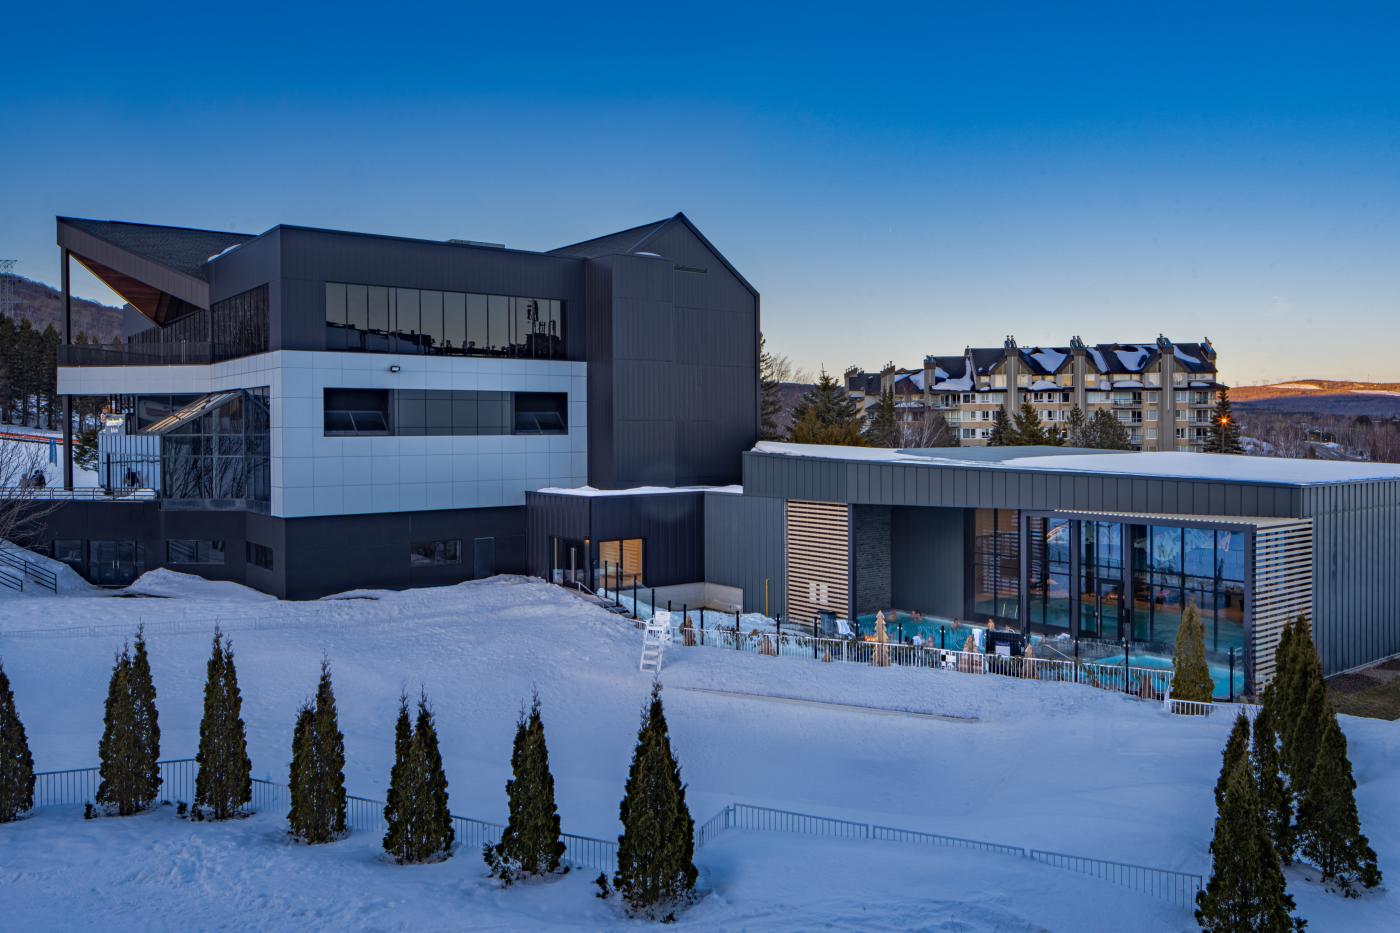 Delta Hotels Marriott, Mont Sainte-Anne, Resort et Centre des congrès - Exterior Centre Aqua Nordik